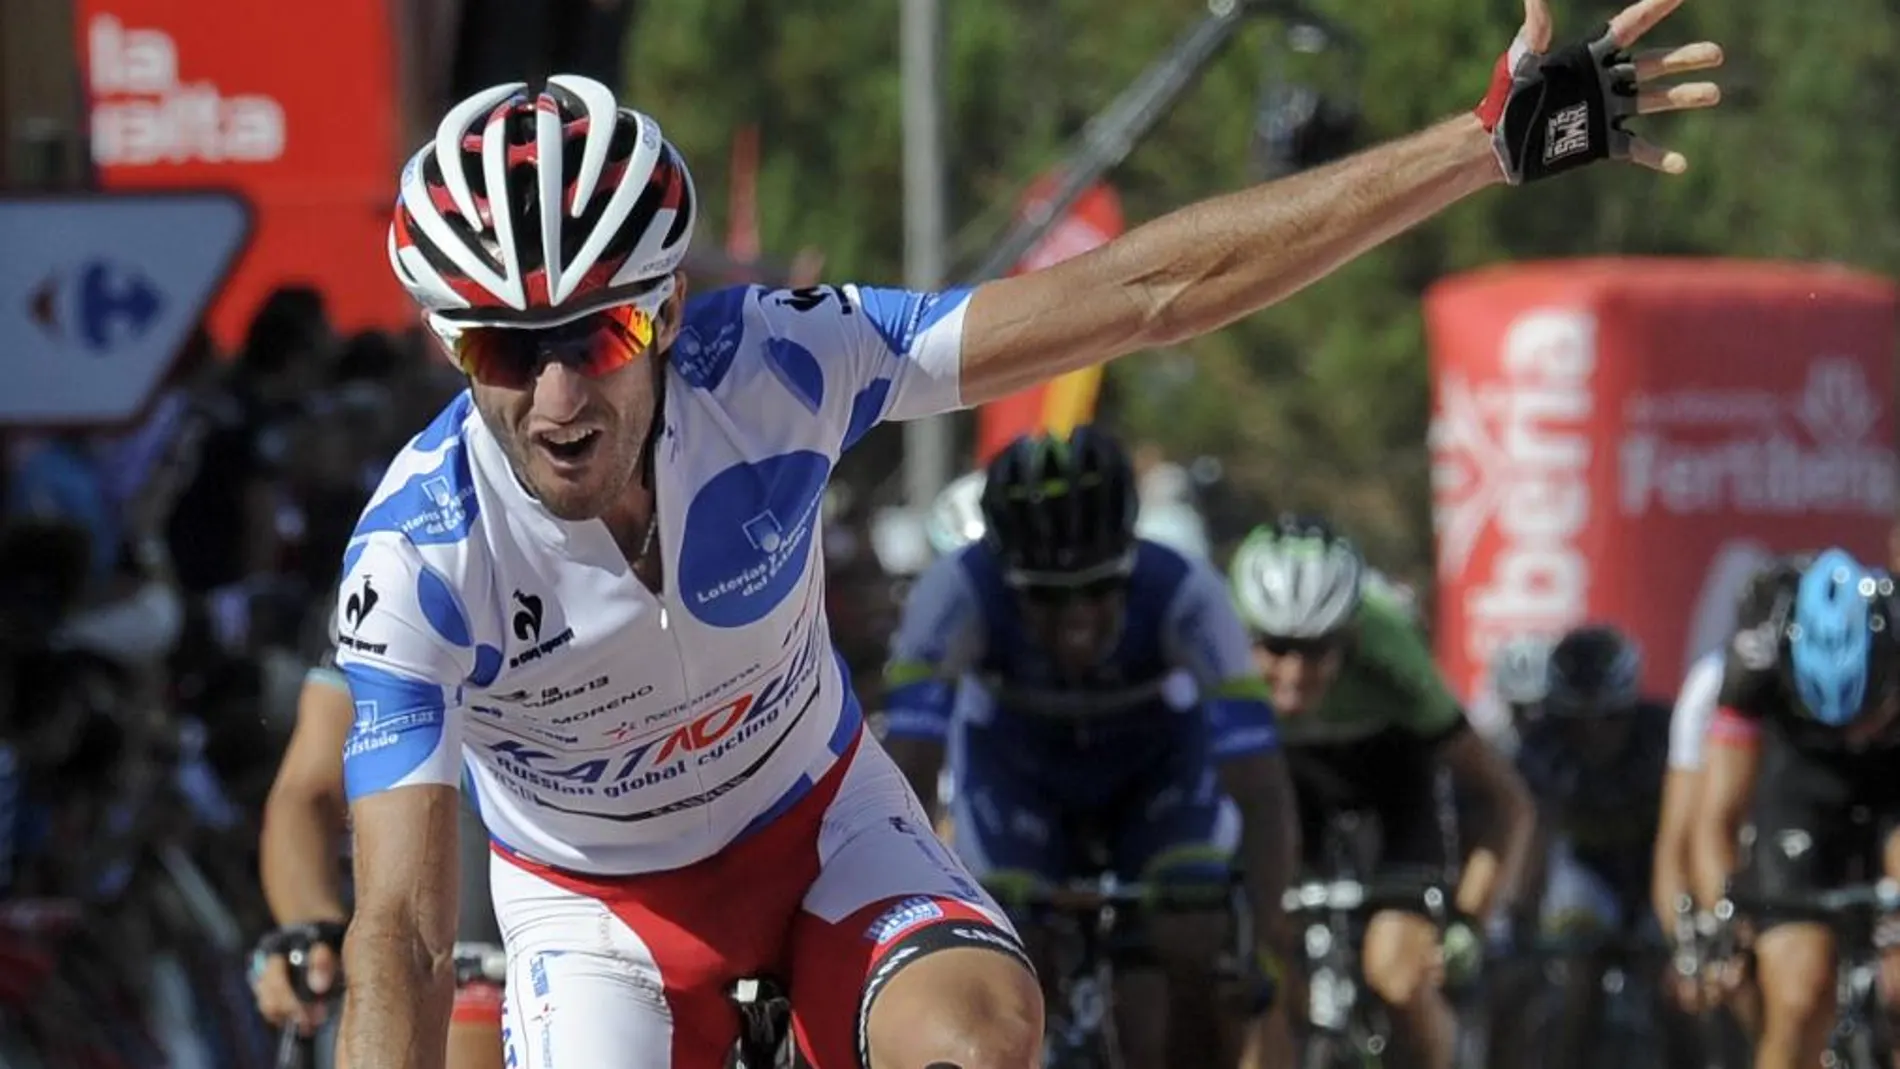 El ciclista español del Katusha Dani Moreno cruza en primera posición la línea de meta tras la cuarta etapa de la Vuelta Ciclista a España